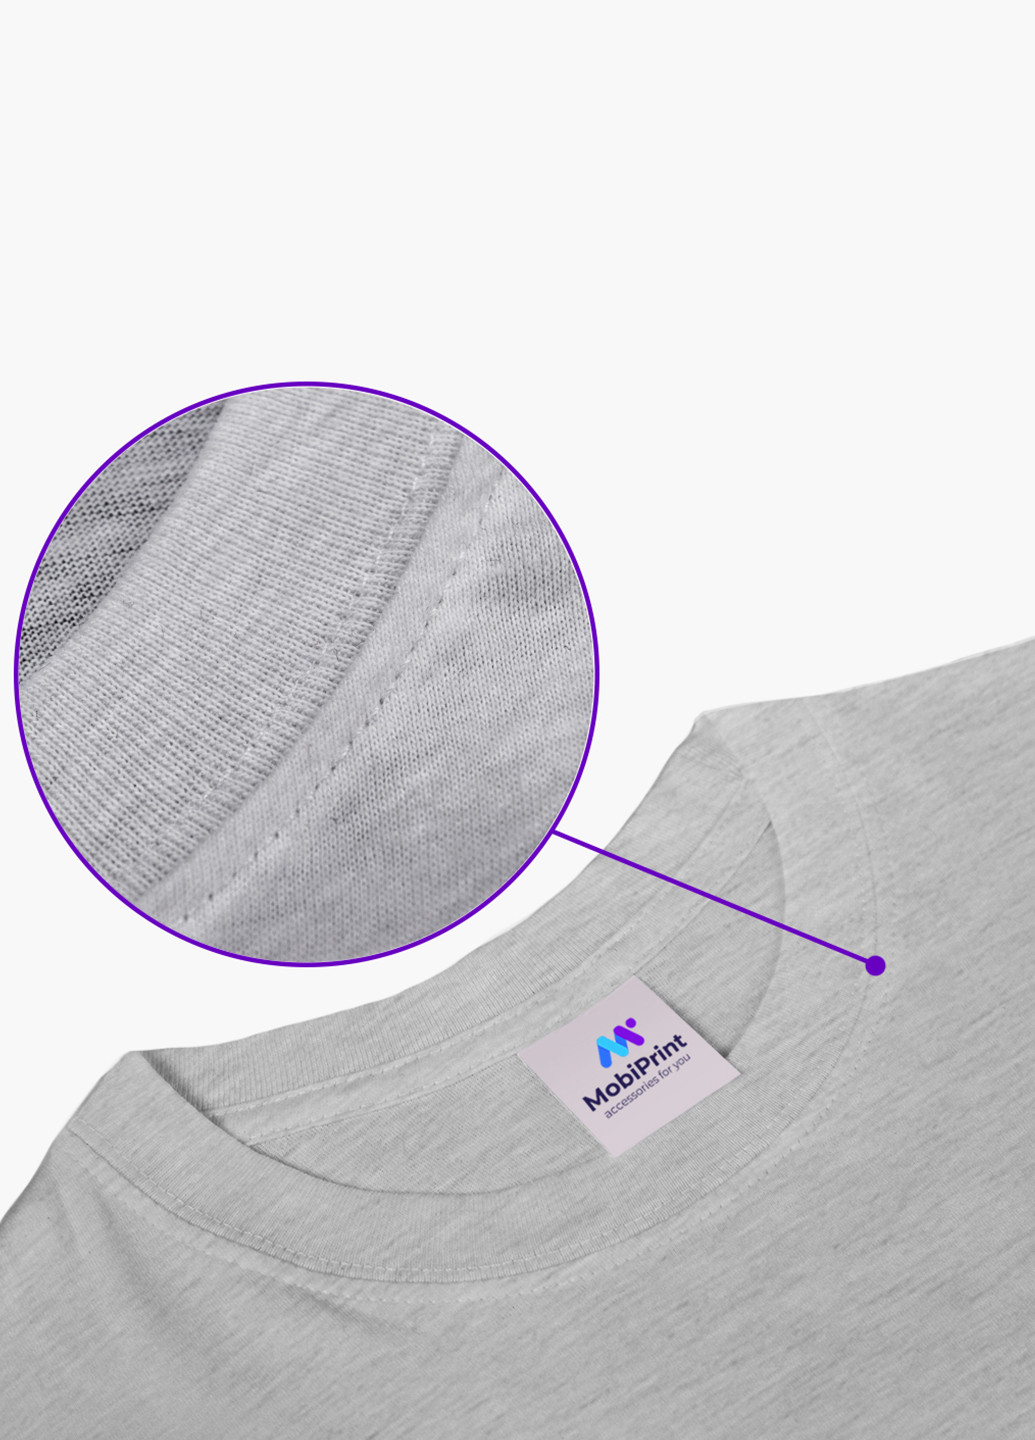 Світло-сіра демісезонна футболка дитяча роблокс (roblox) (9224-1221) MobiPrint